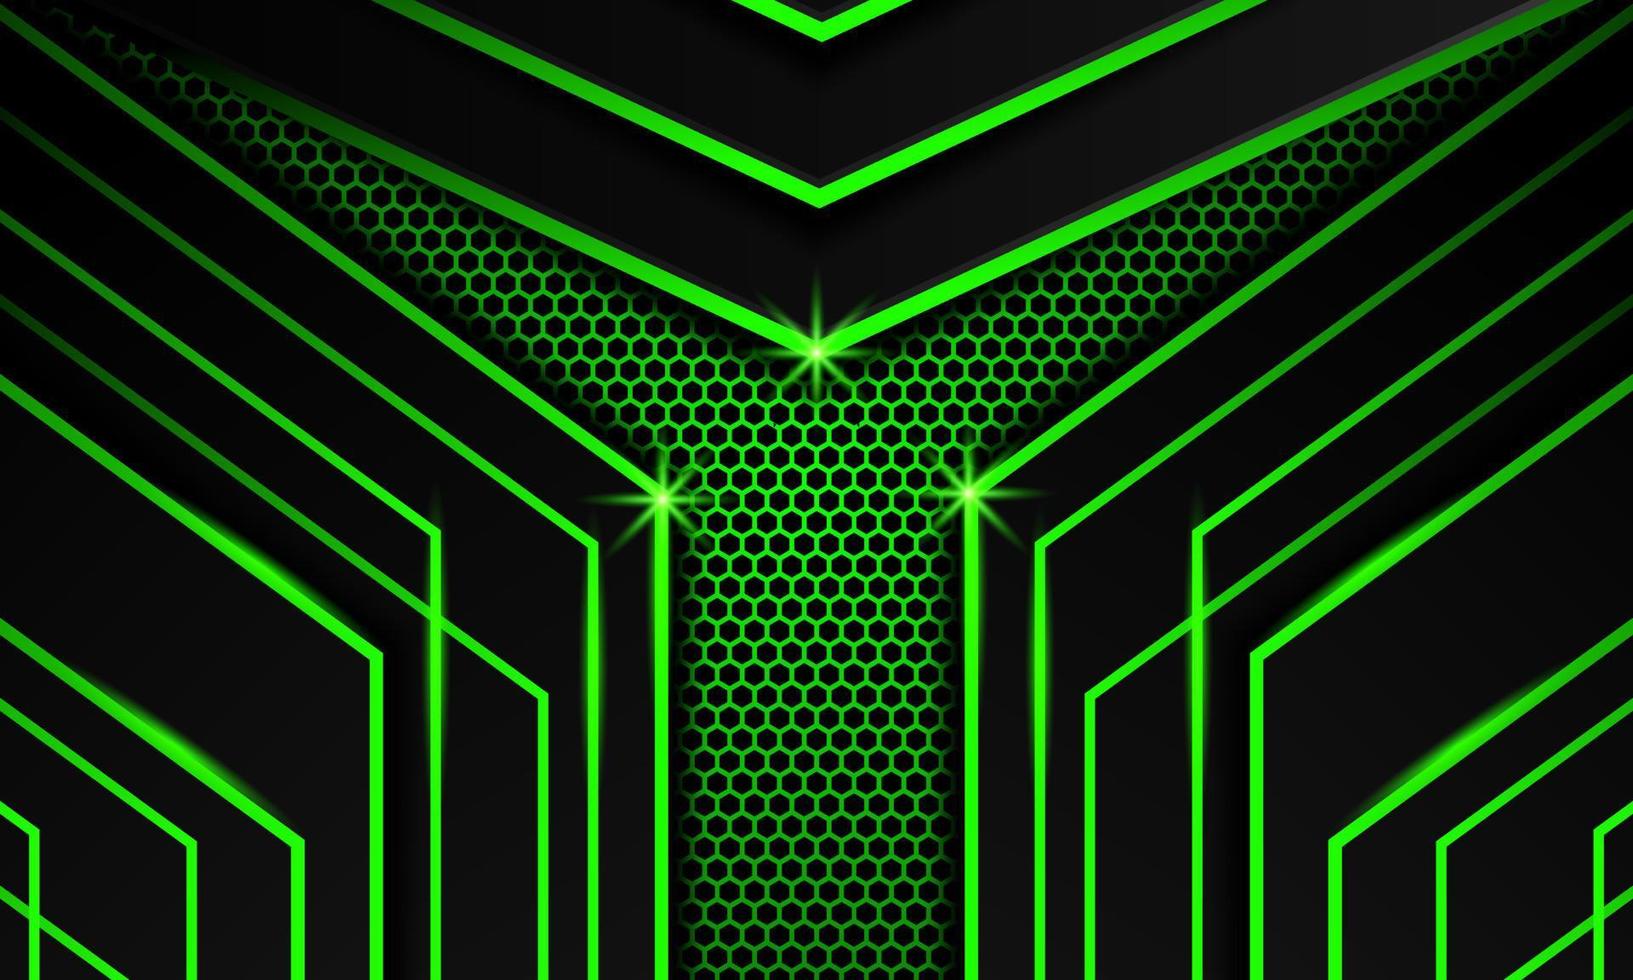 Abstract dark green Futuristic Gaming Background with hexagon: Với hình nền trò chơi độc đáo này, bạn sẽ được truyền cảm hứng để chơi game đến mức không thể rời mắt. Thiết kế đen và xanh lá cây với hình sáu cạnh nhìn rất thú vị và đầy tính sáng tạo, đảm bảo sẽ khiến bạn cảm thấy hứng thú. 